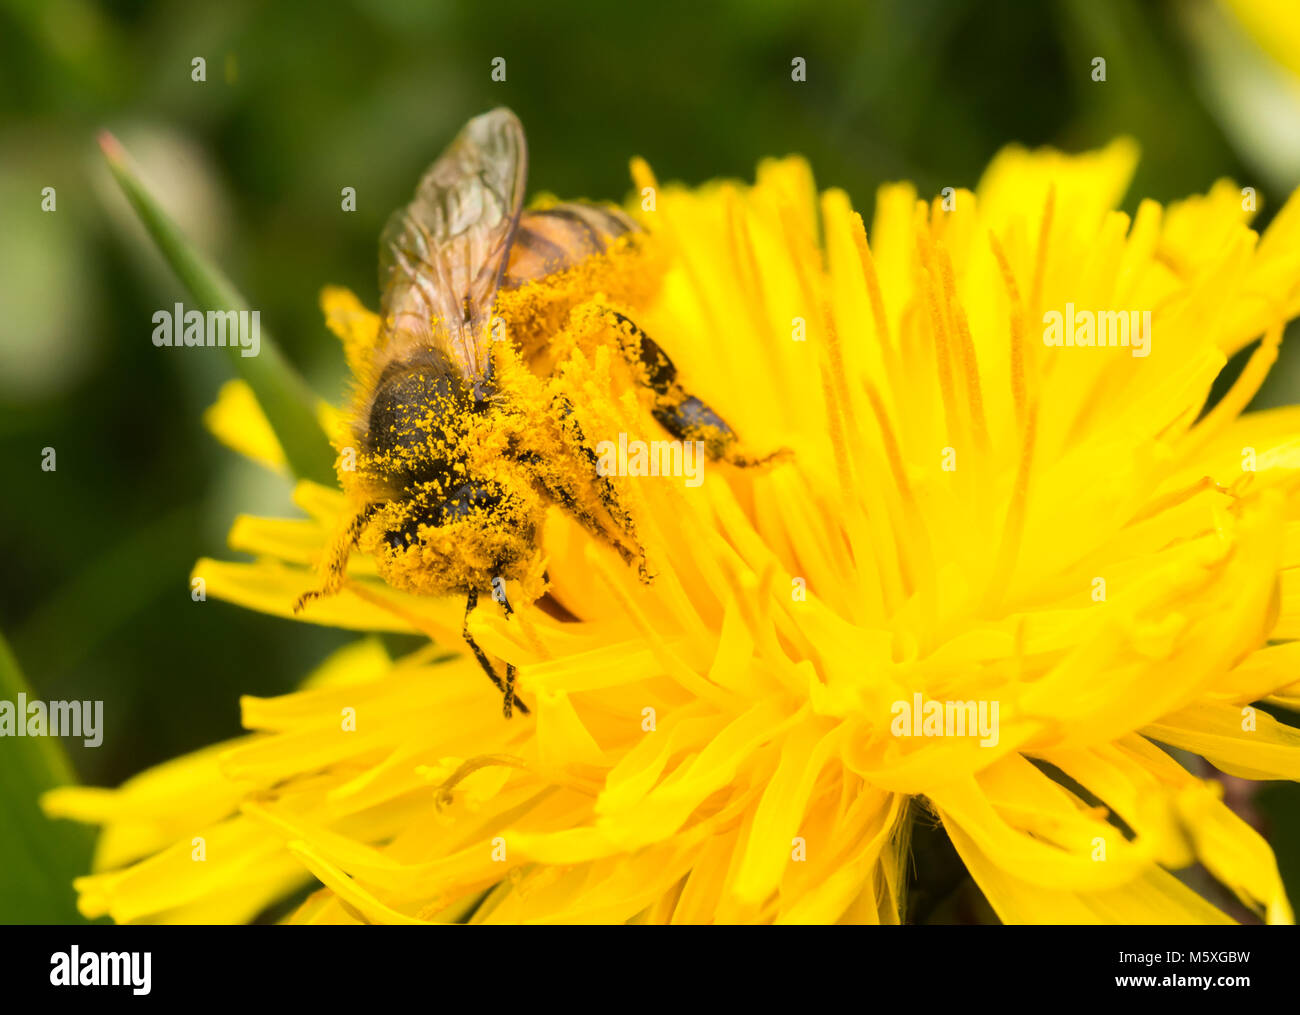 La abeja melífera (Apis mellifera) cubiertos de polen, alimentándose de polen y la recolección de un amarillo diente de león (Taraxacum officinale) Foto de stock